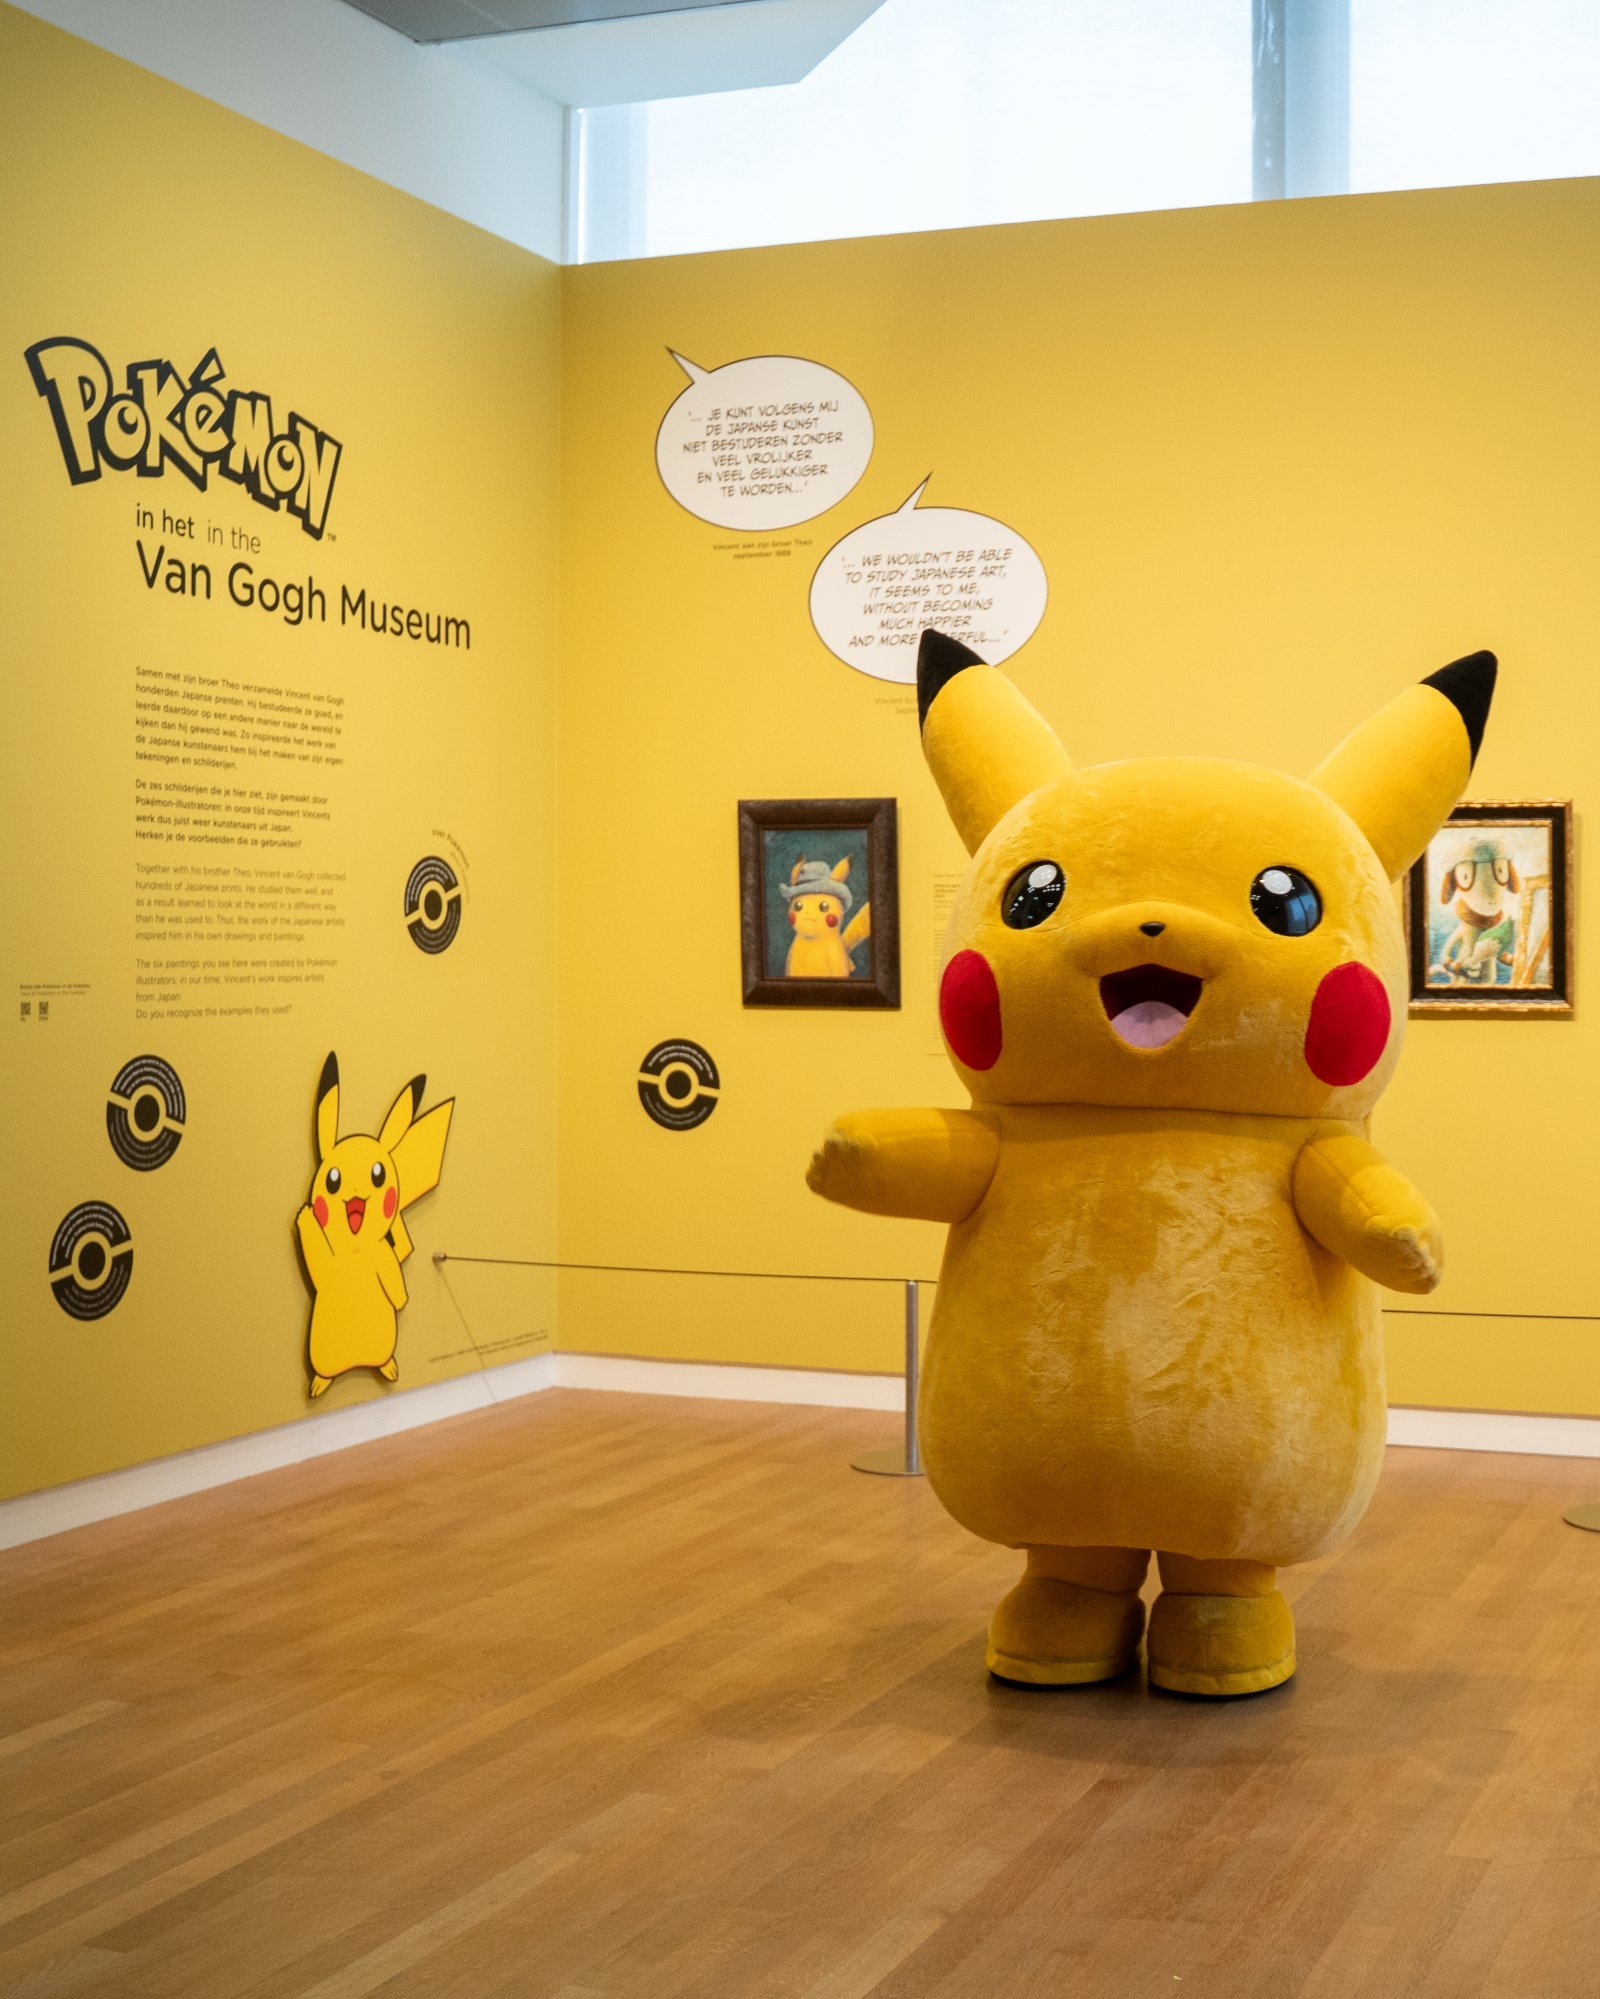 2-Pokémon X Van Gogh Museum presentation - Pikachu - big.jpg